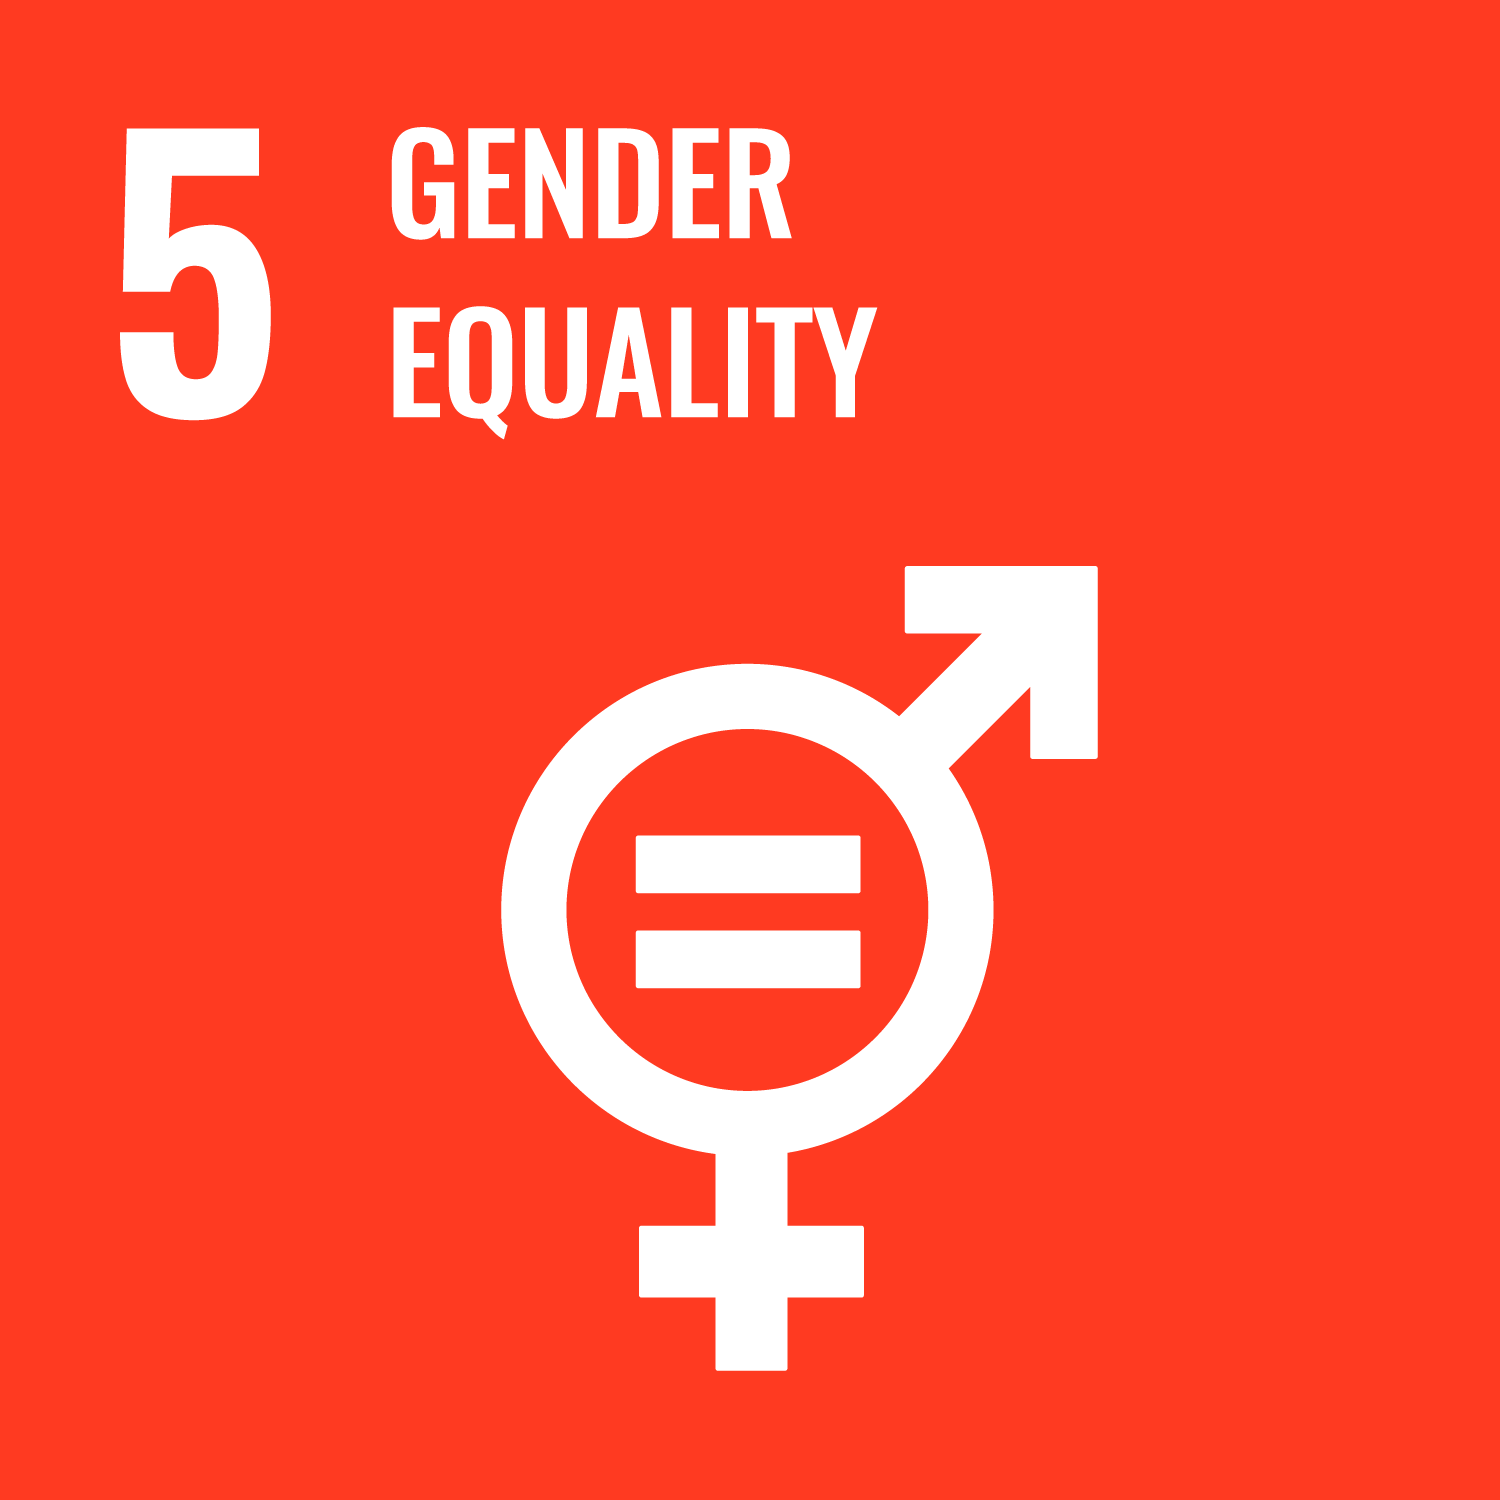 5: Gender equality.